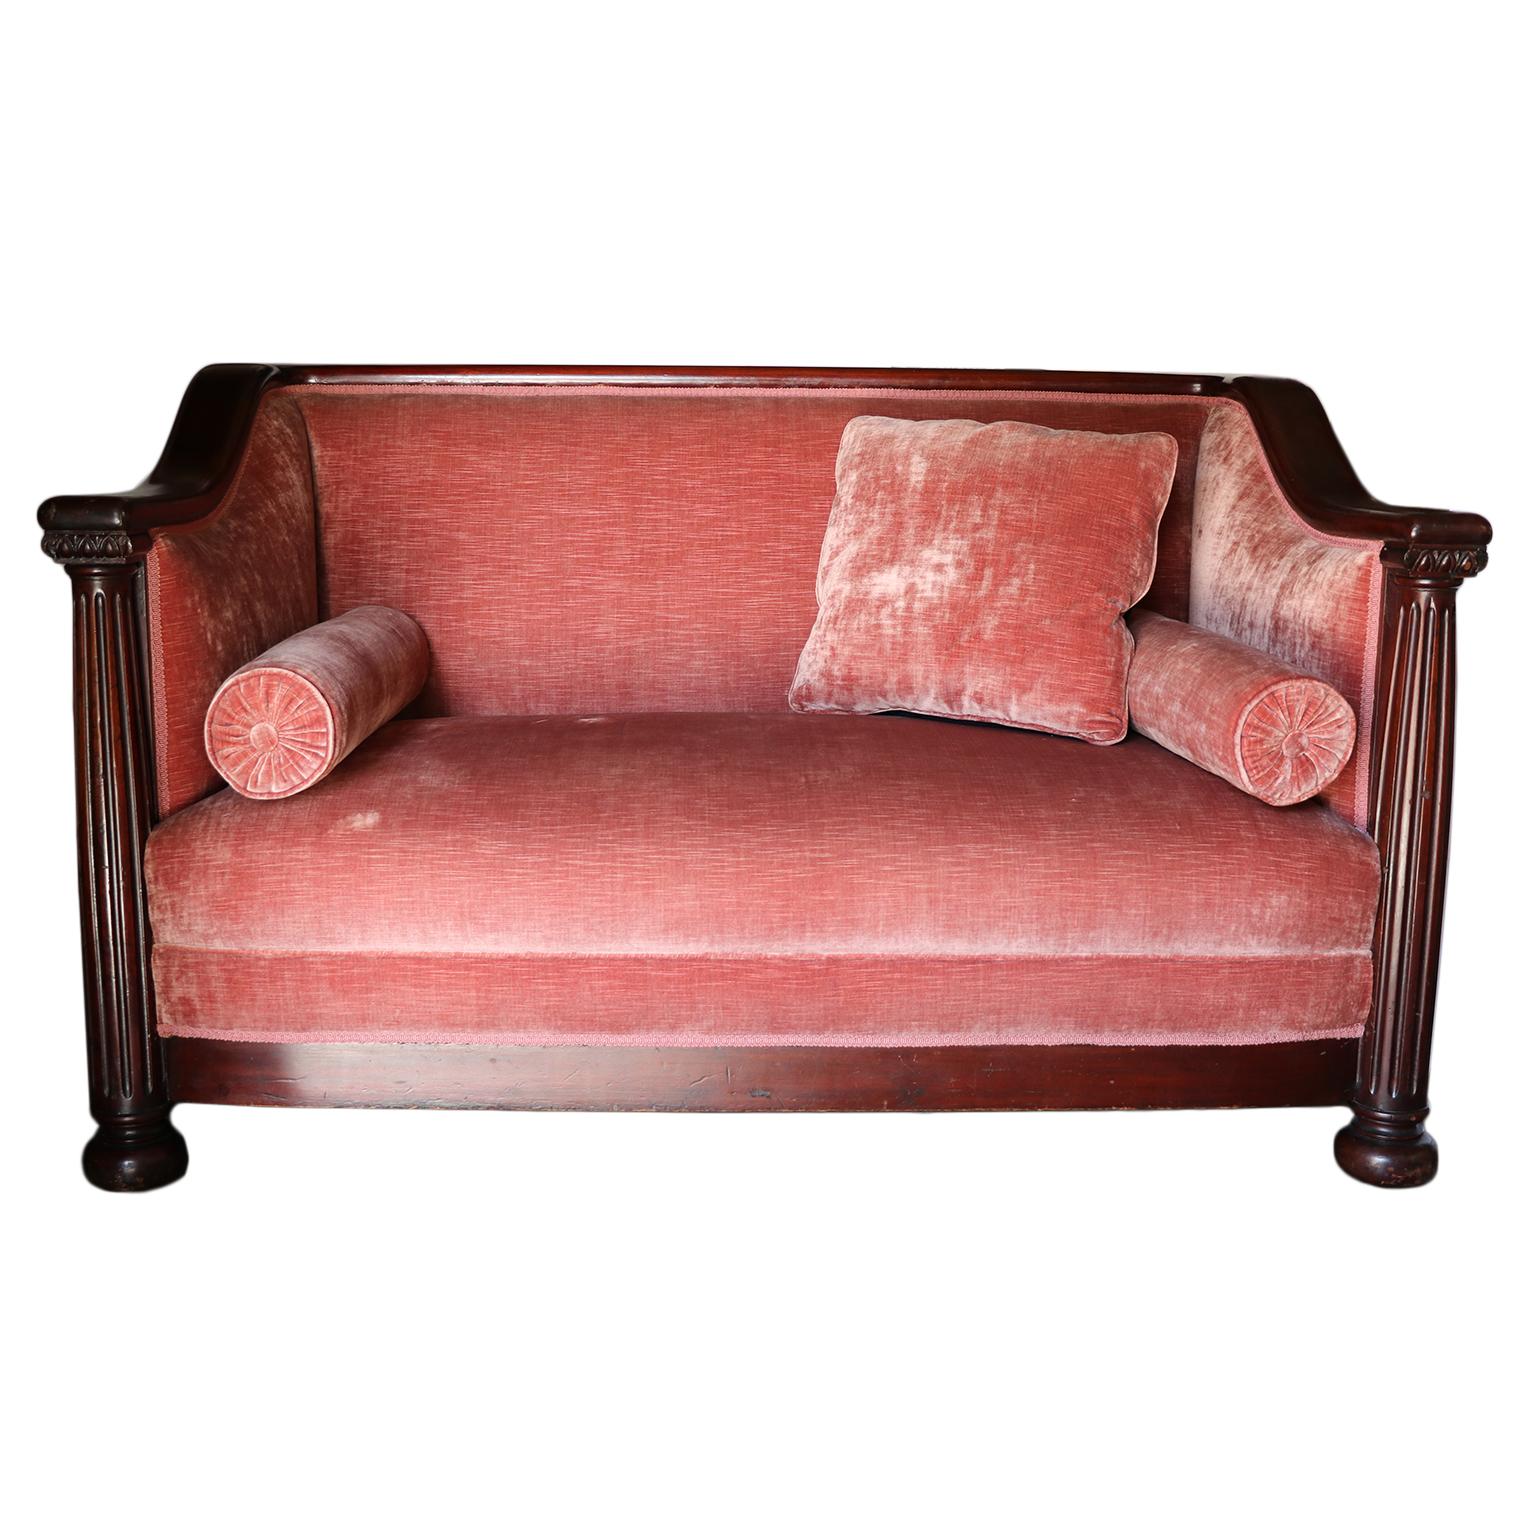 Rehaussez votre décoration intérieure avec ce canapé en velours rouge qui allie harmonieusement le confort, le style et une touche d'allure vintage. Livré avec un coussin carré et 2 coussins roulants. La surface d'assise est de 46,5